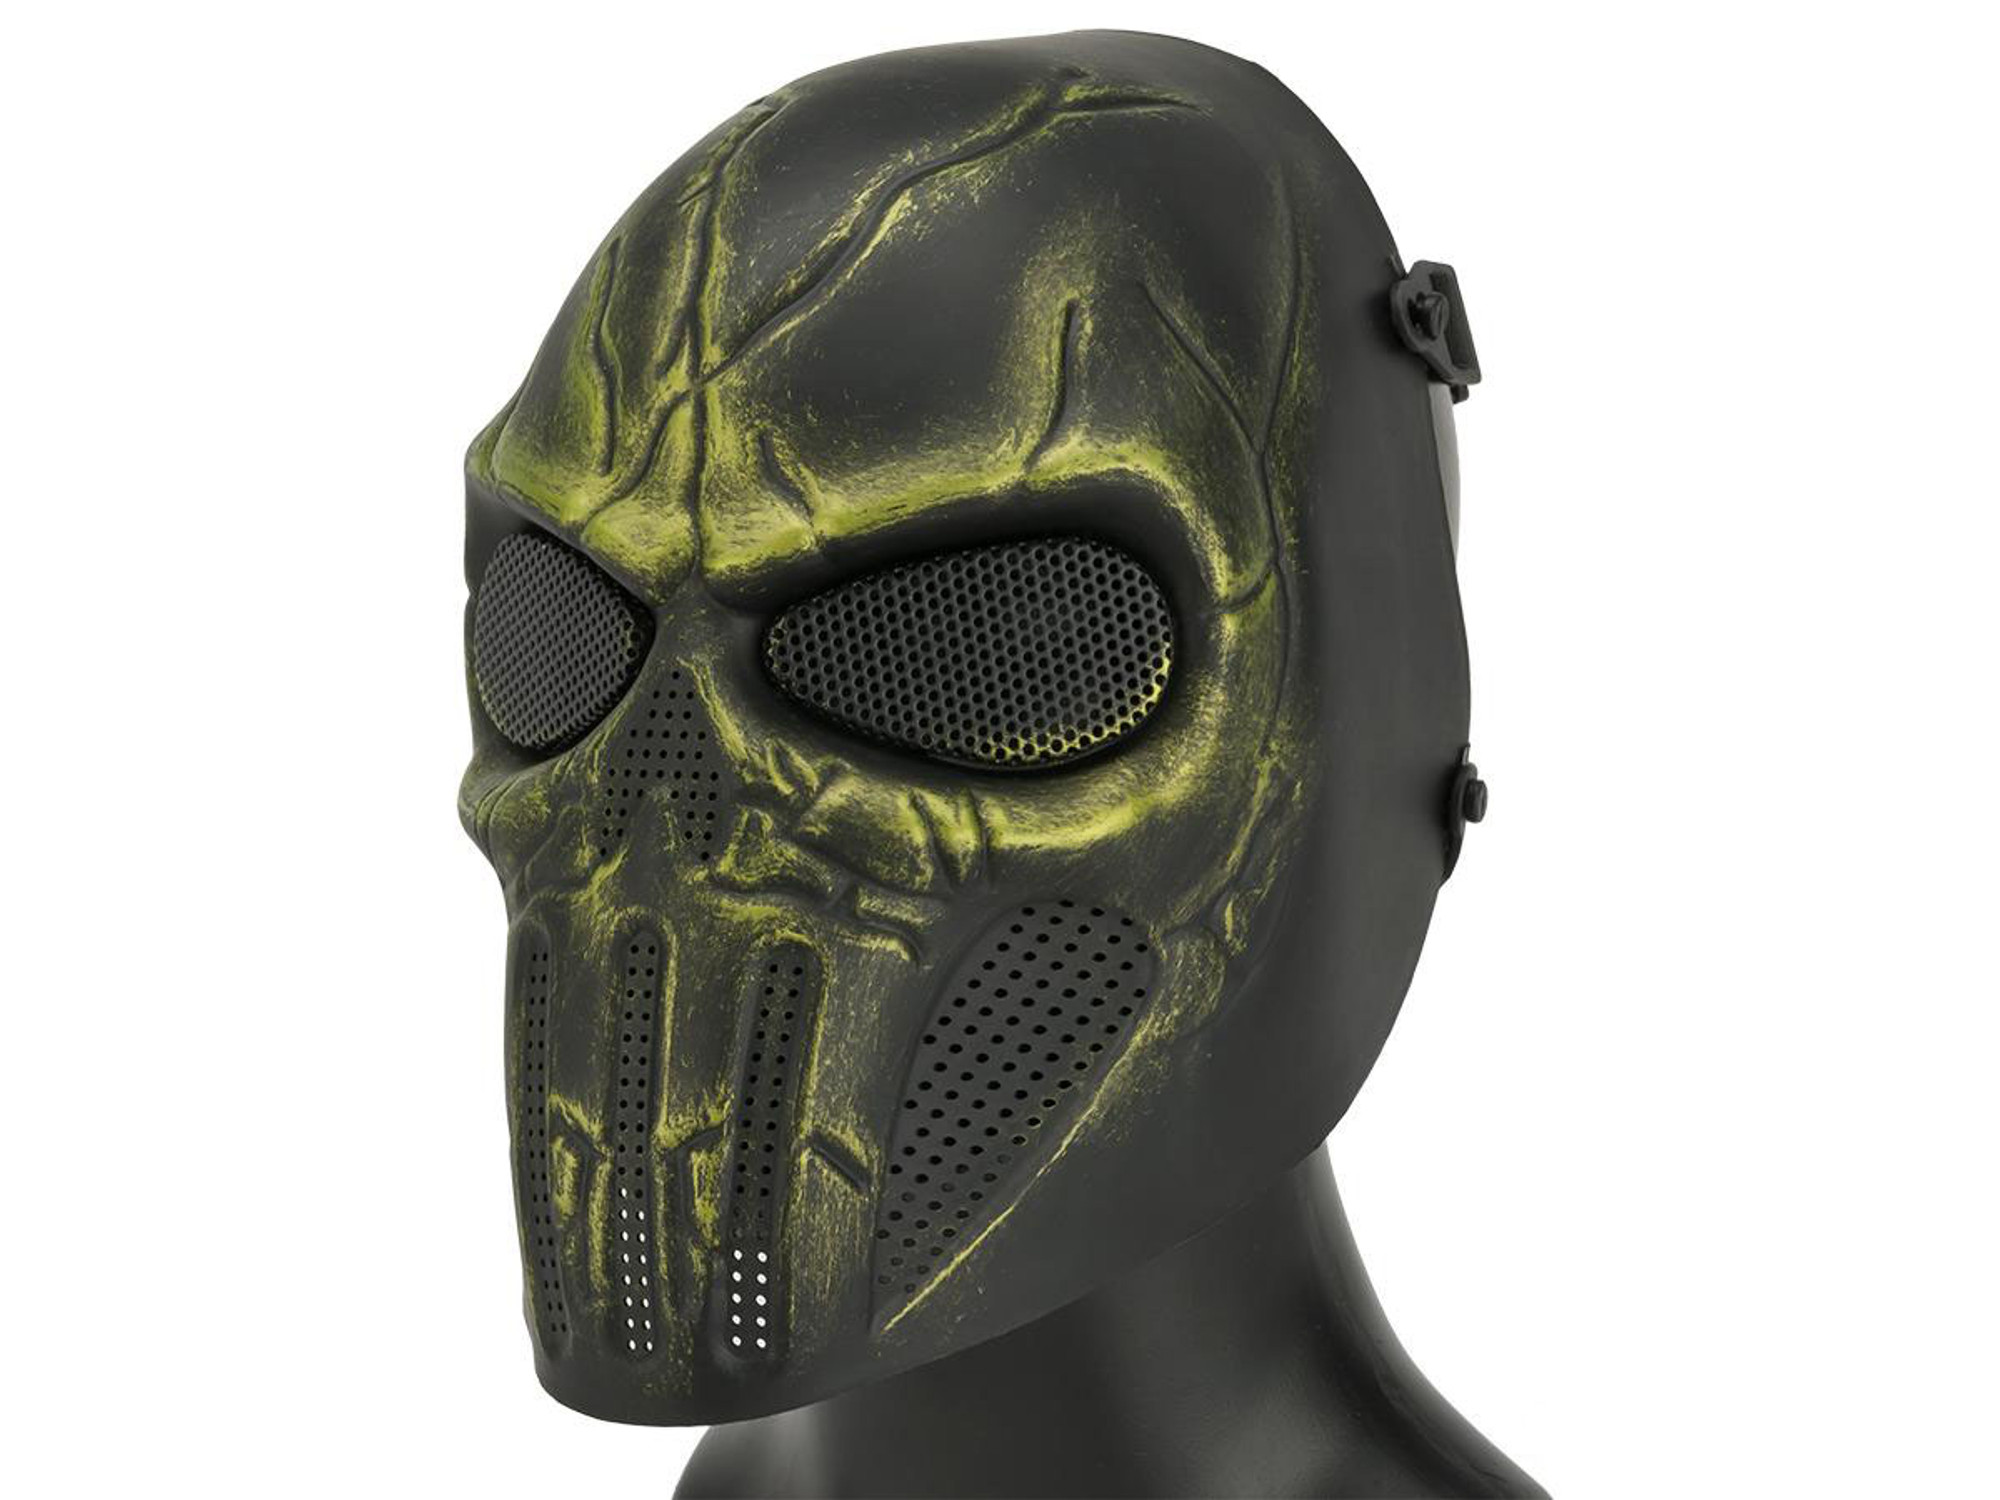 Matrix High Speed Wire Mesh "Chastener" Skull Mask - Swamp